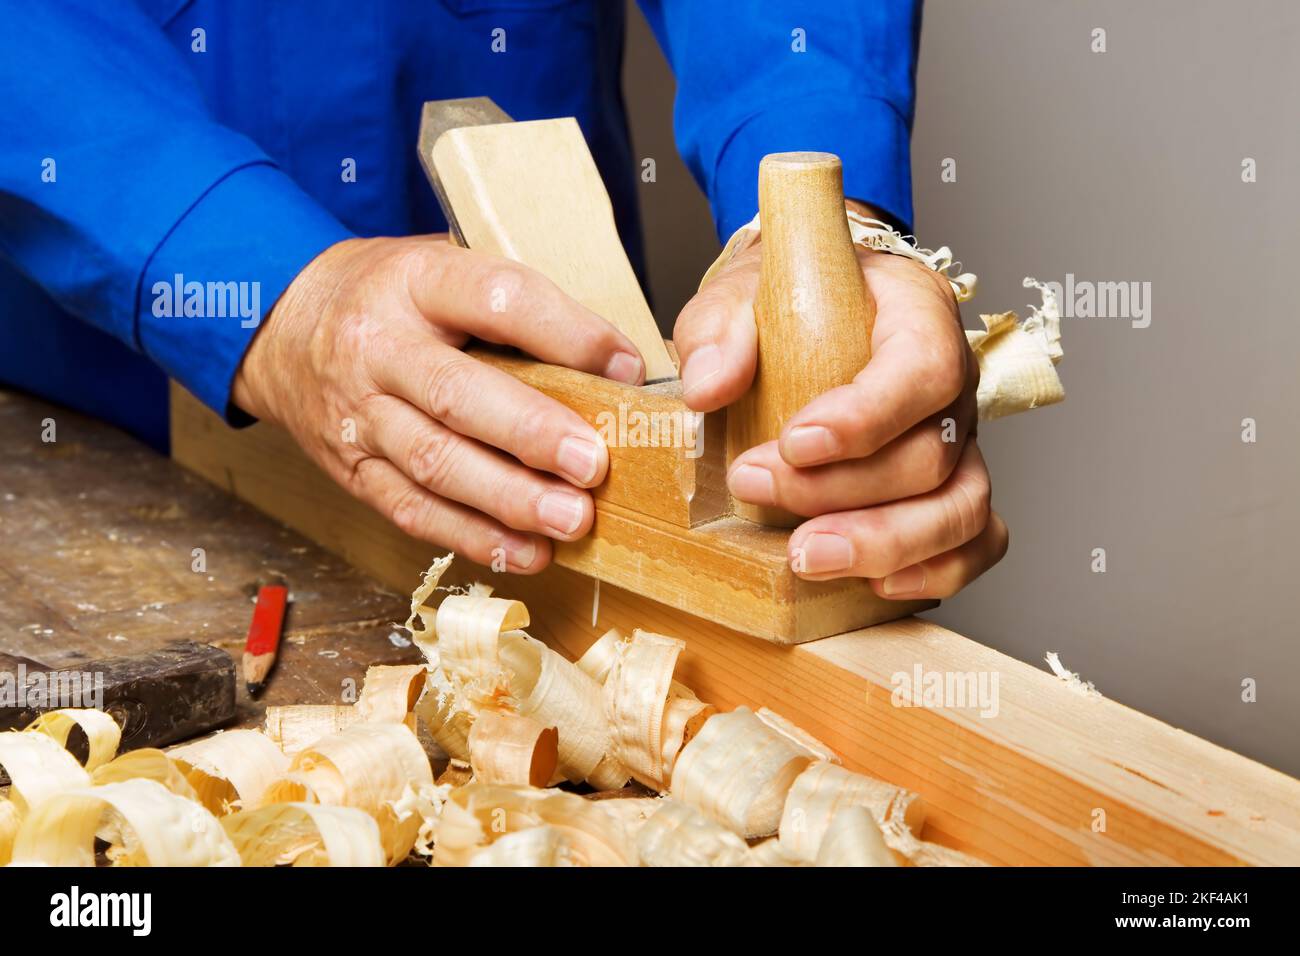 Ausbildung in einer Tischlerei, Handwerker produziert Holzspäne, Tischlerhobel, Tischlerei, Tischler, Schreiner, Handwerksberuf, Möbelbau, Holzhobel, Stock Photo